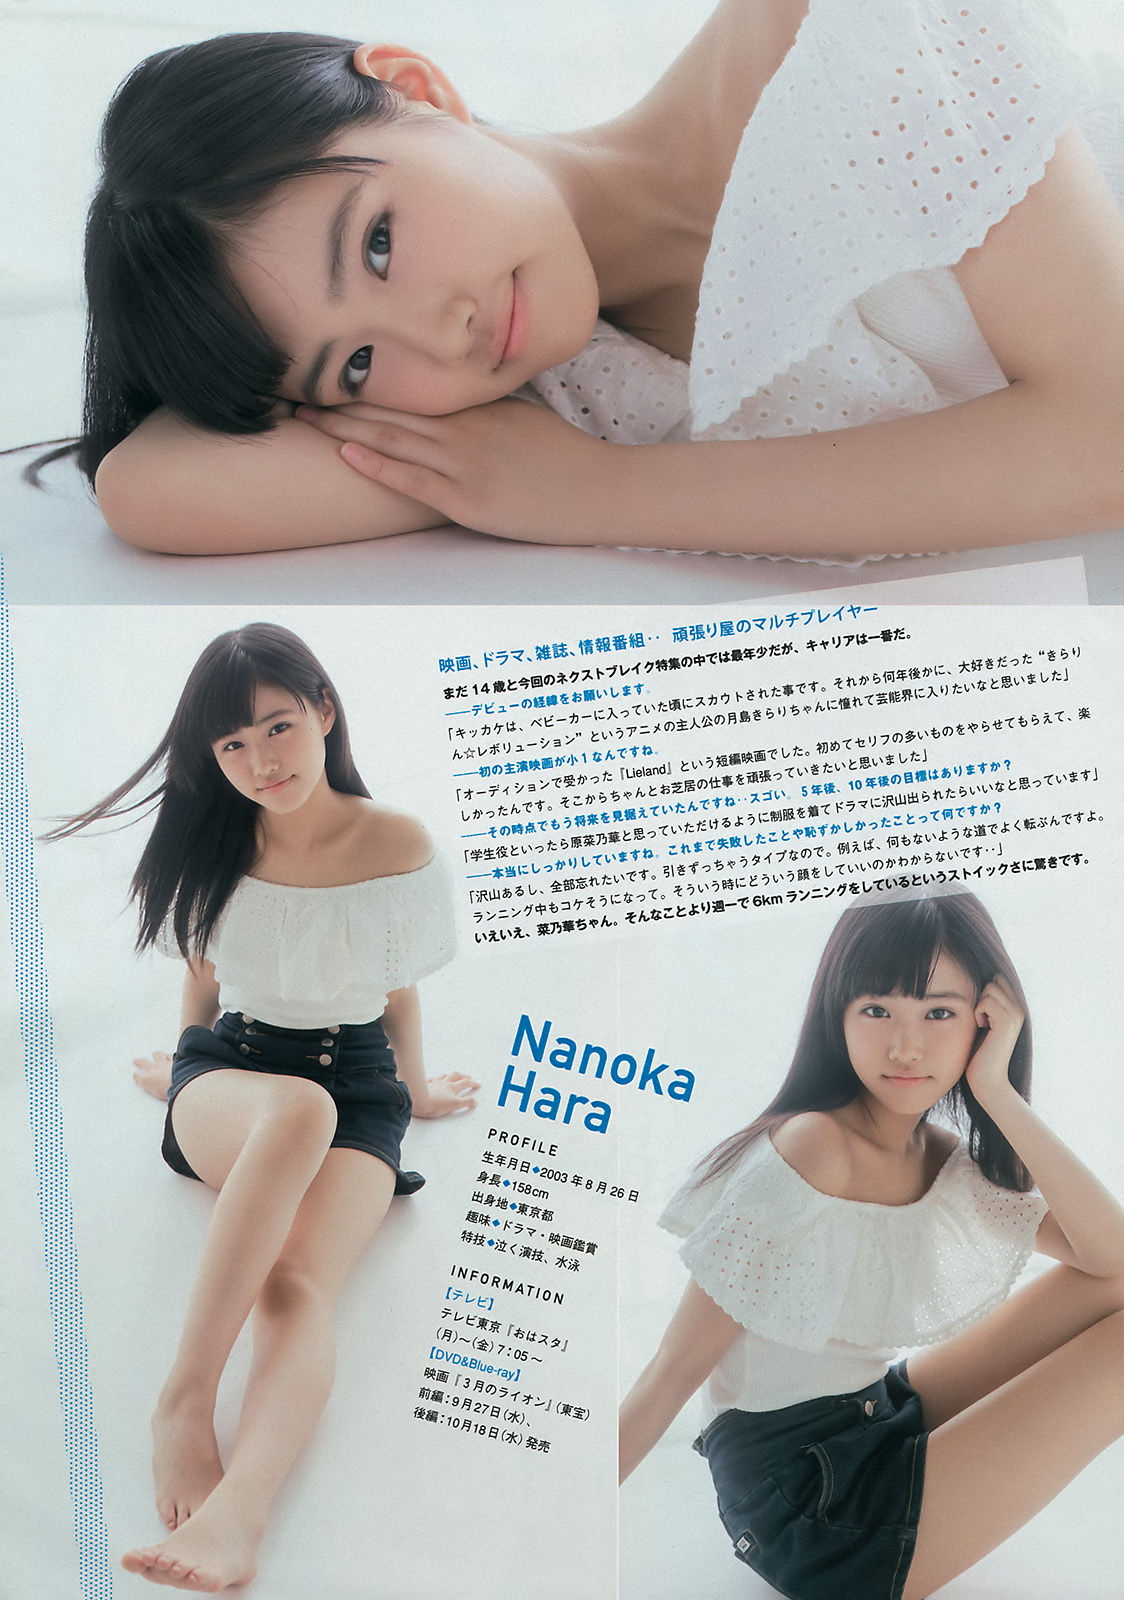 [Revista Young] Miru Shiroma Akari Yoshida 2017 No.40 Fotografia Página 1 No.f6d5ba